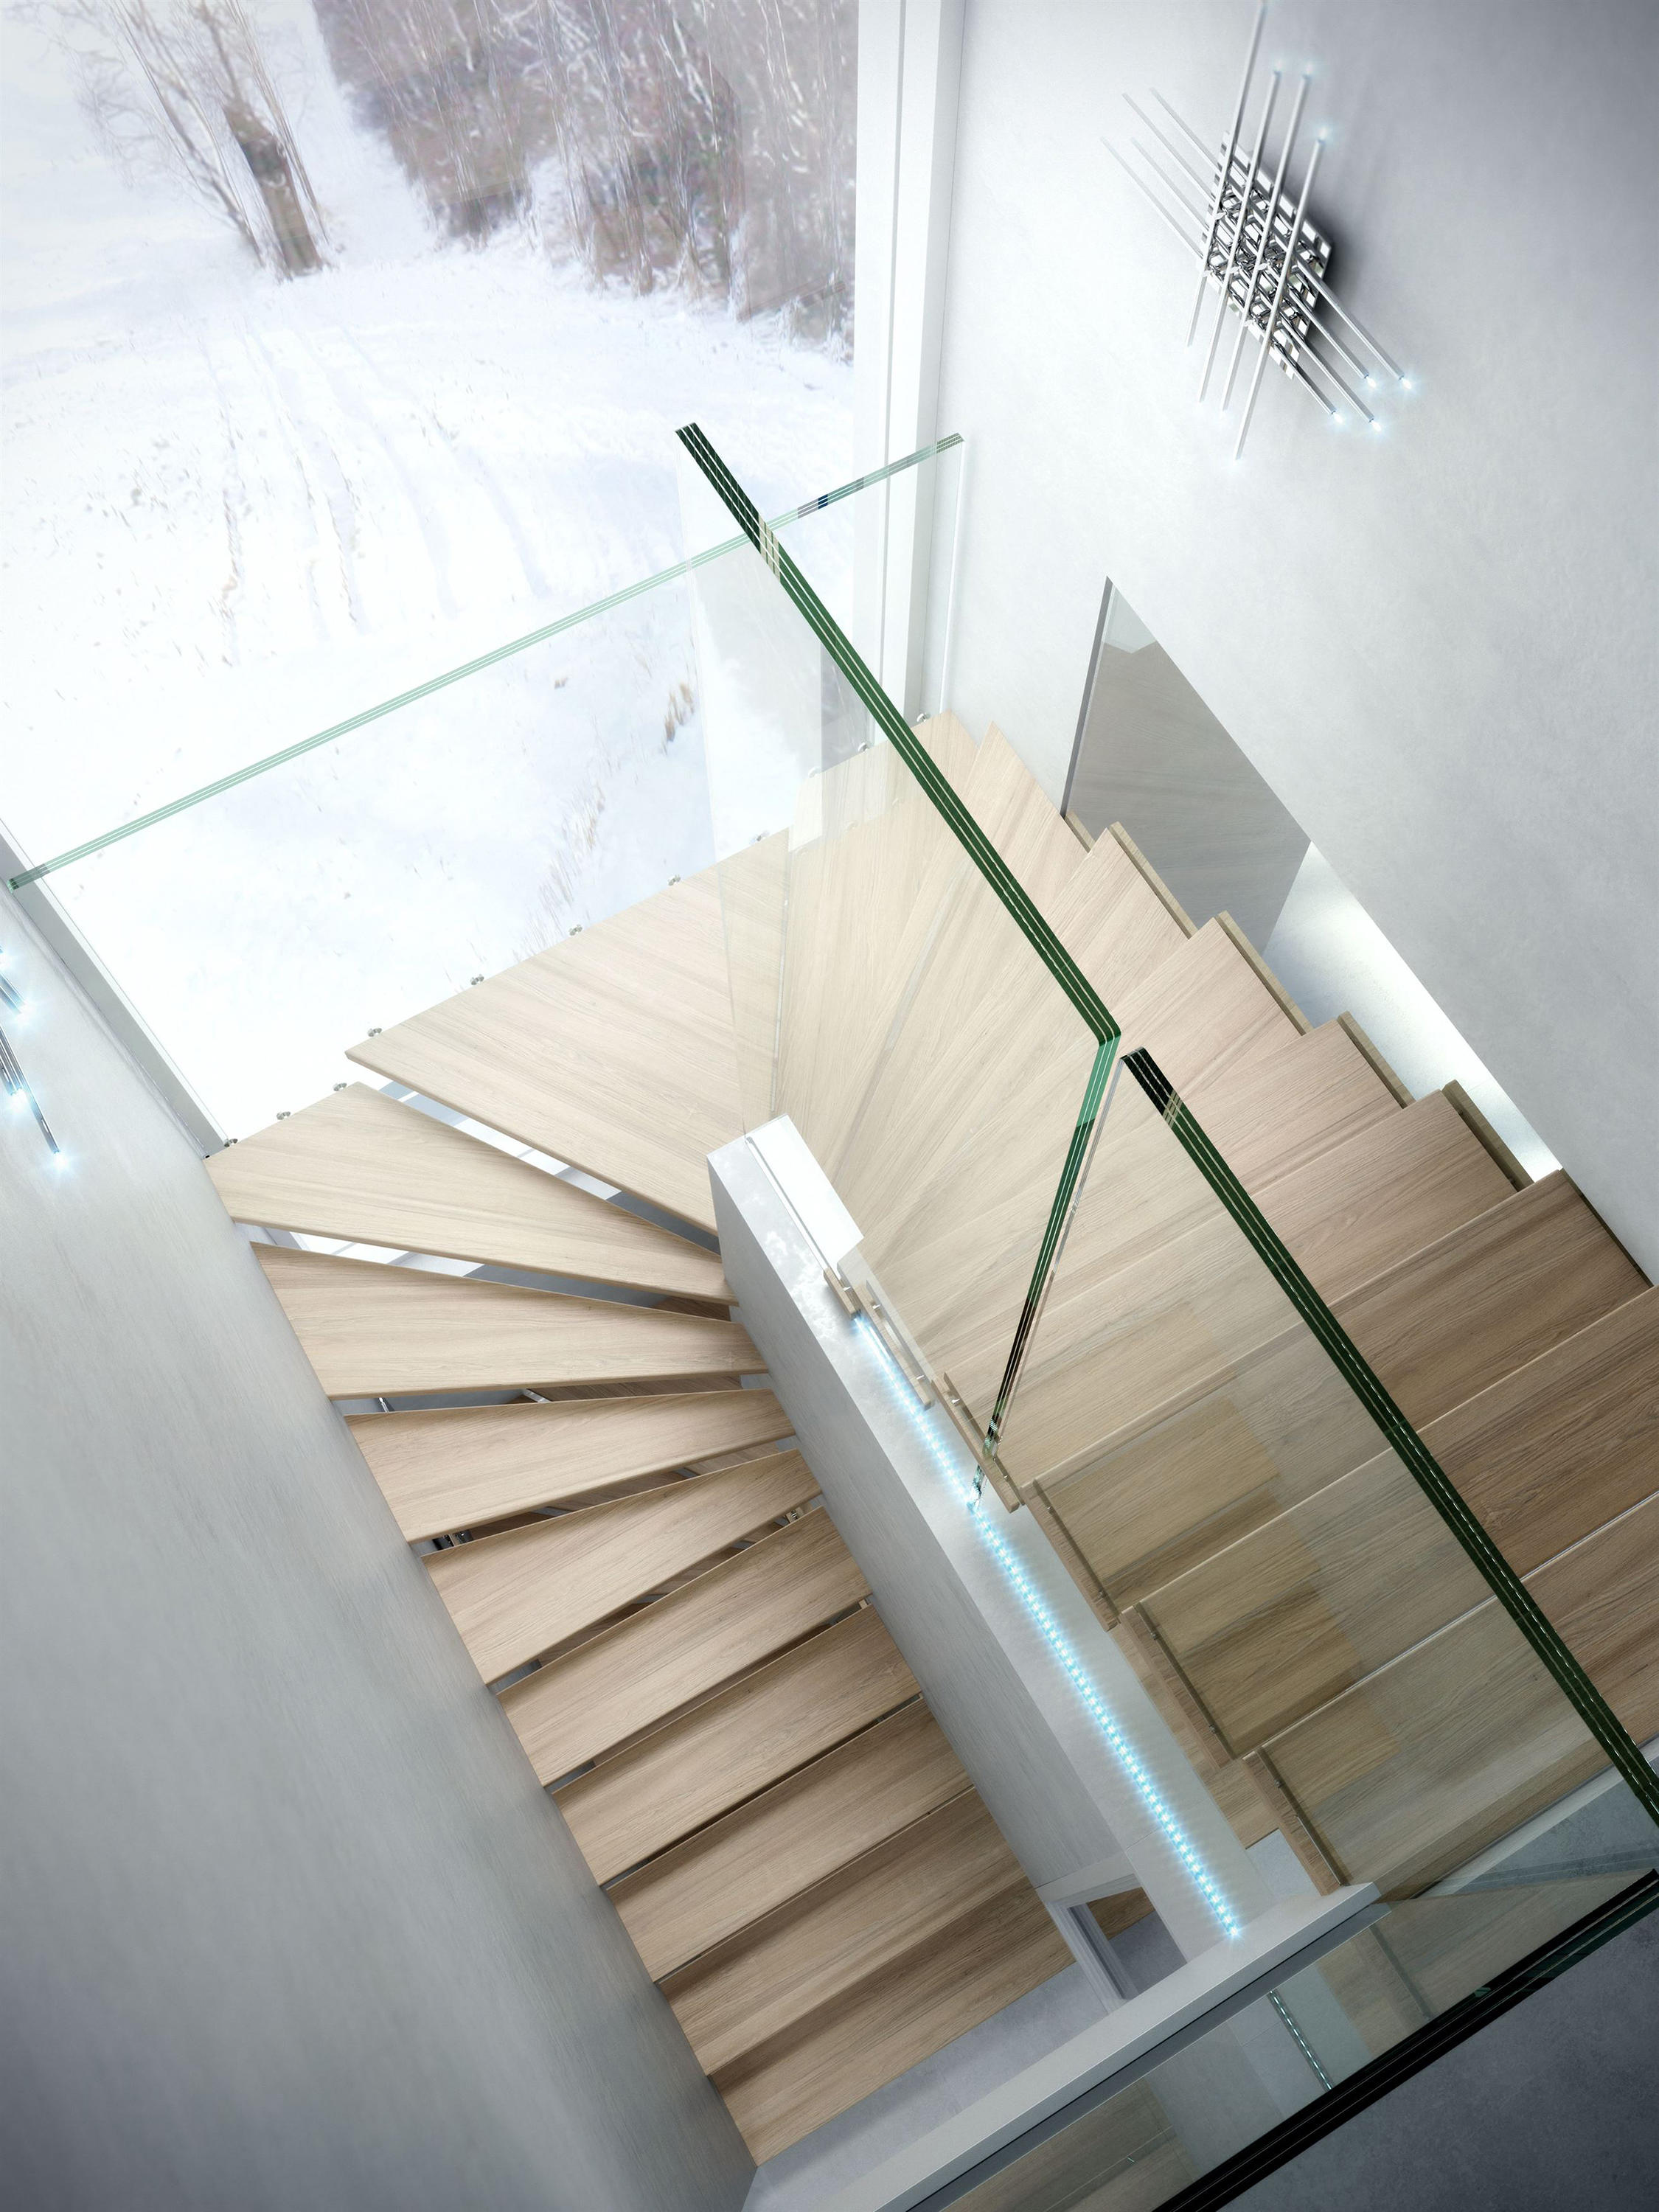 Mistral escalier en verre avec LED - Siller Escaliers